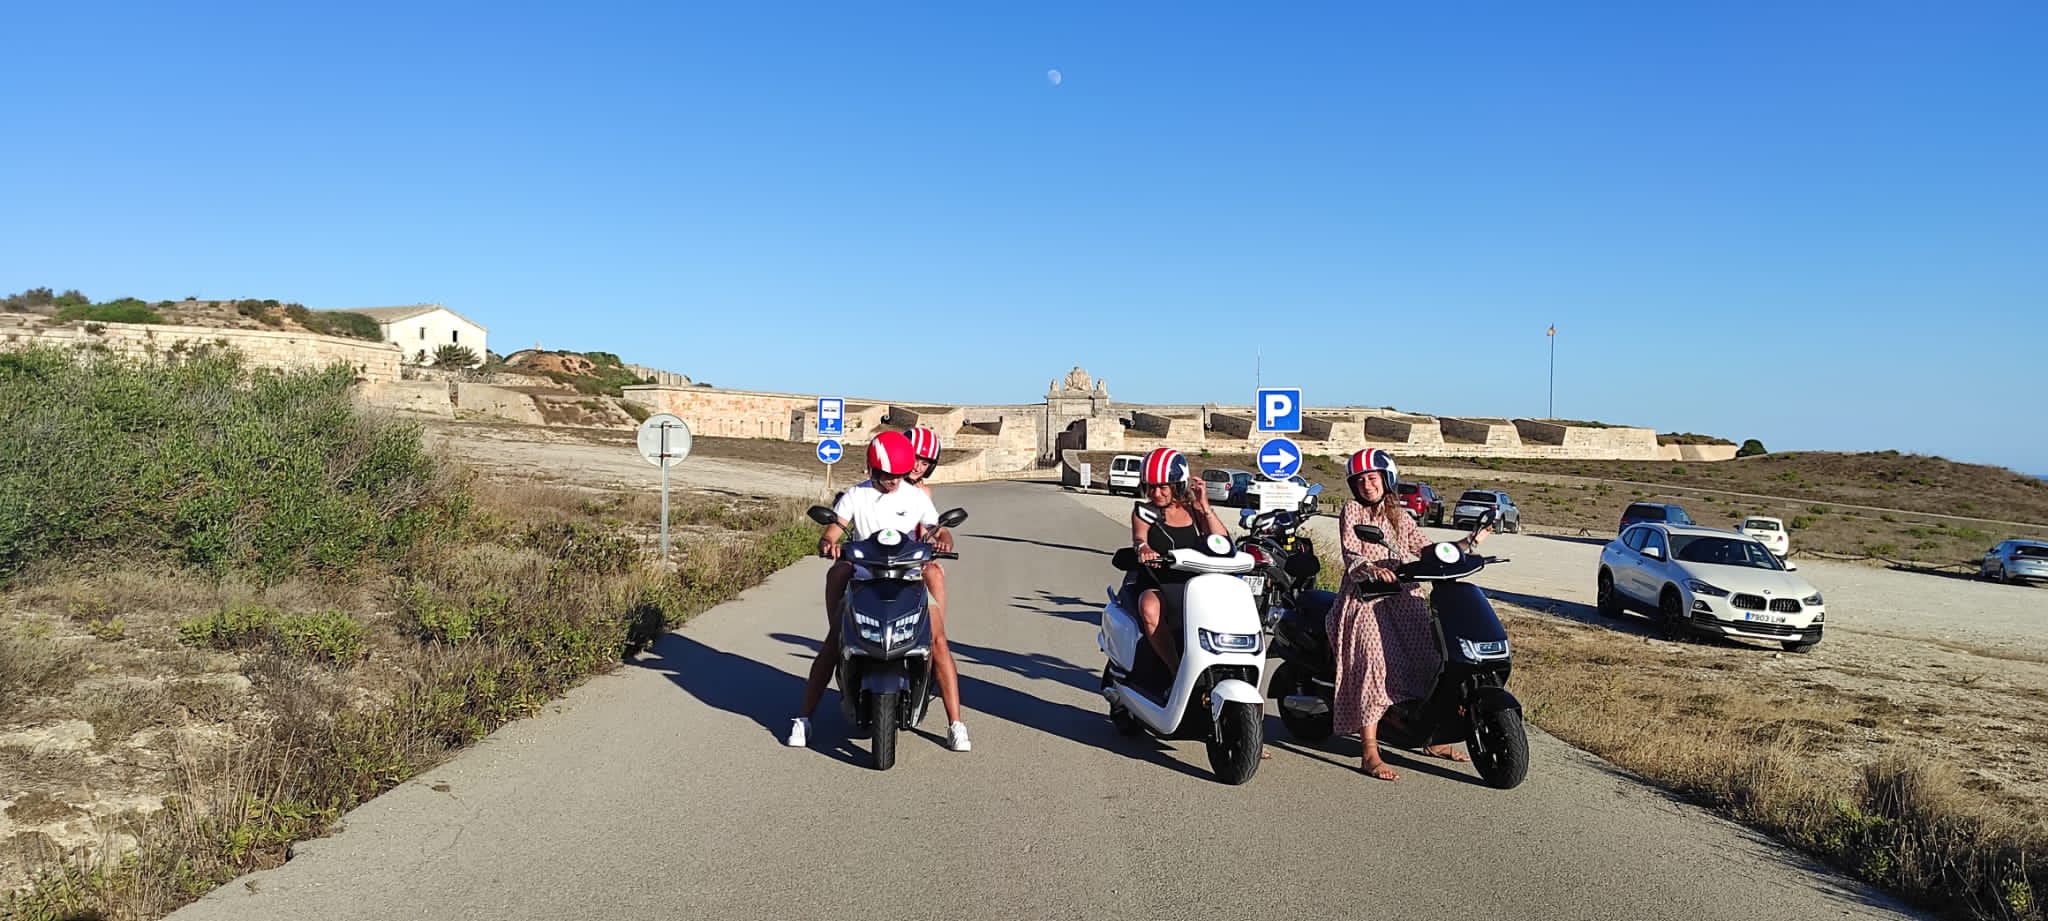 Motorcycle rental Menorca